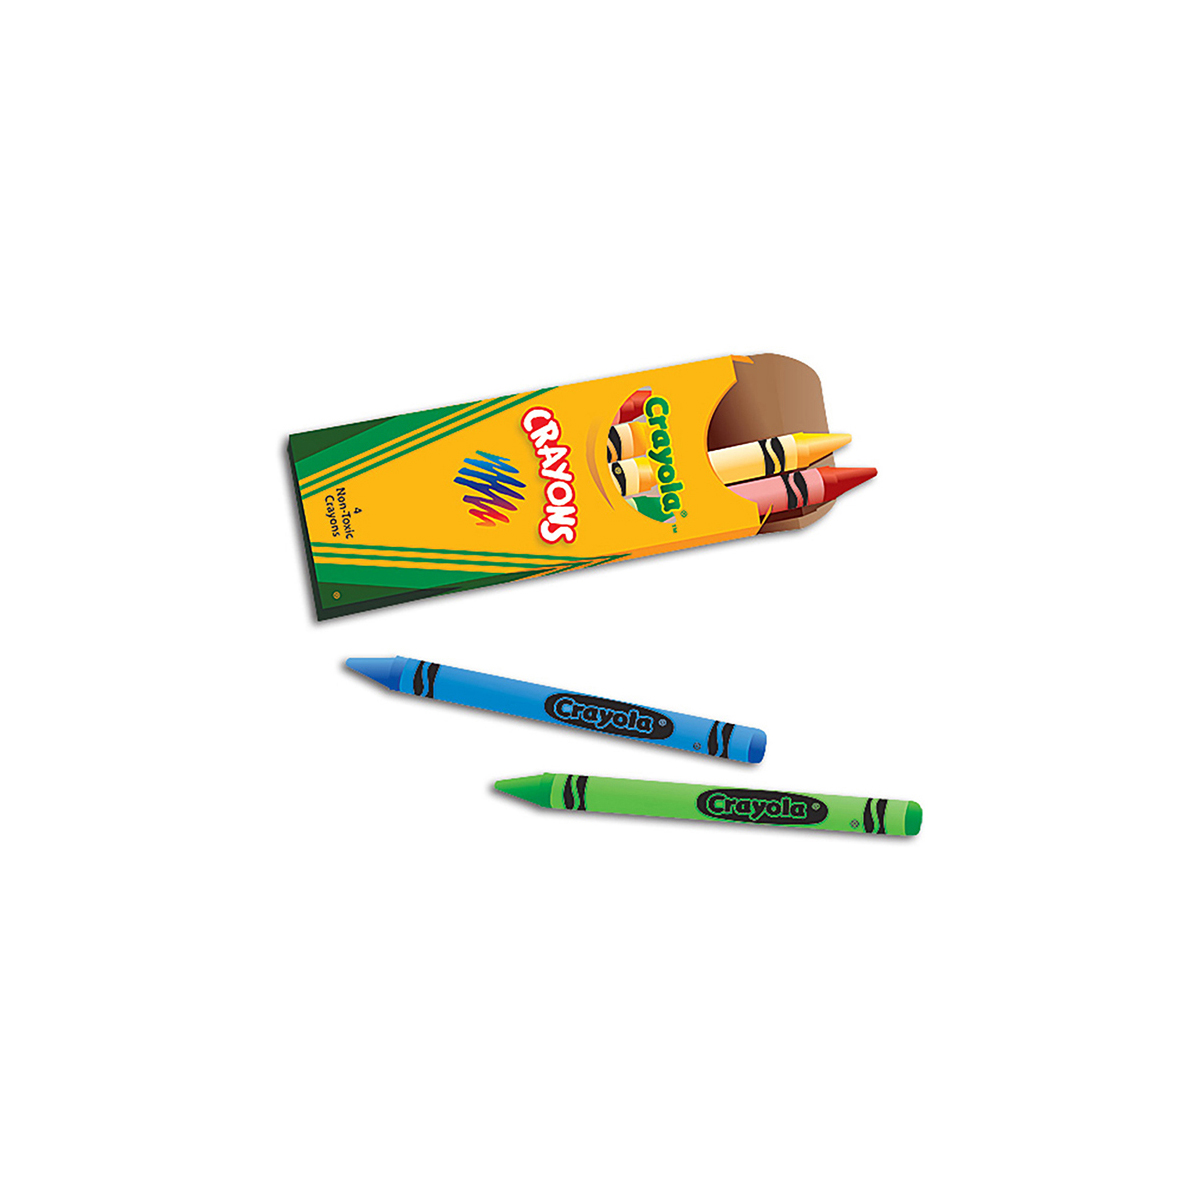 4 Count Crayola Crayons Box